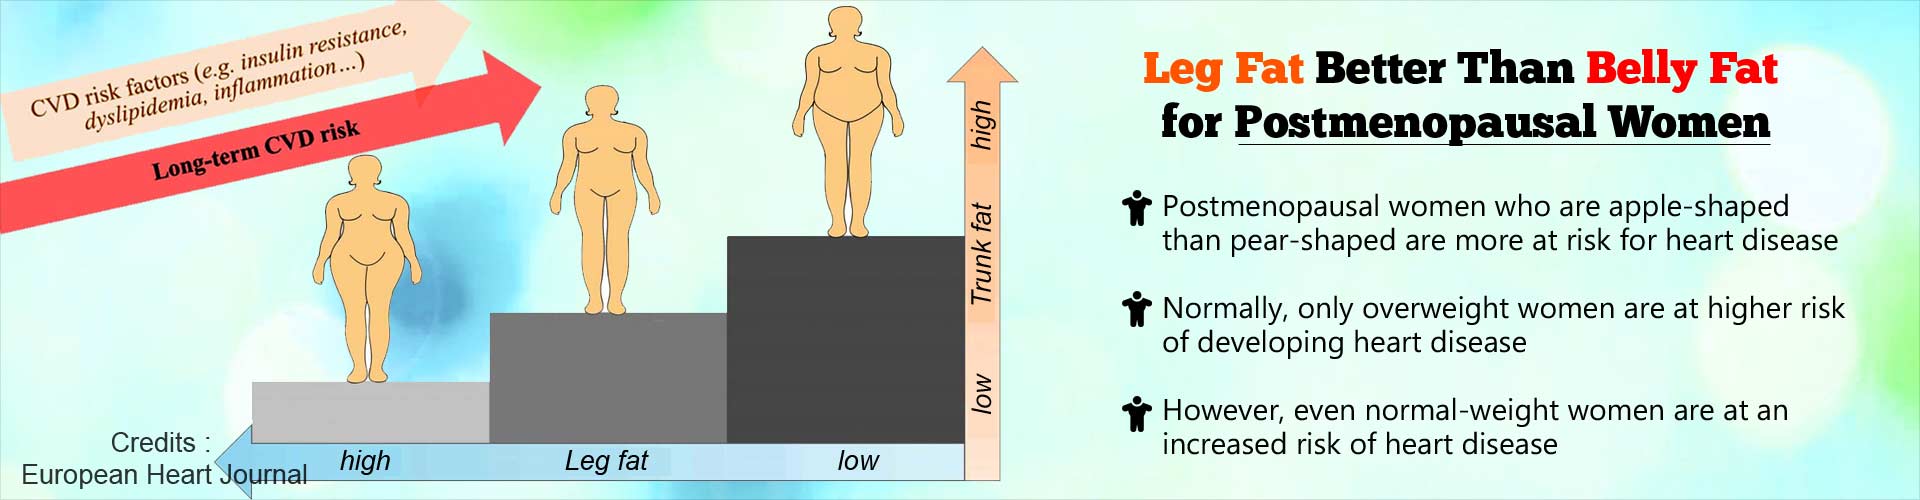 腿部脂肪的燃烧比绝经后妇女的腹部脂肪。绝经后女性竹竿比梨形身材更在罹患心脏病的风险。通常情况下,只有超重女性有更高的患心脏病。然而,即使是正常体重的女性患心脏病的风险增加。